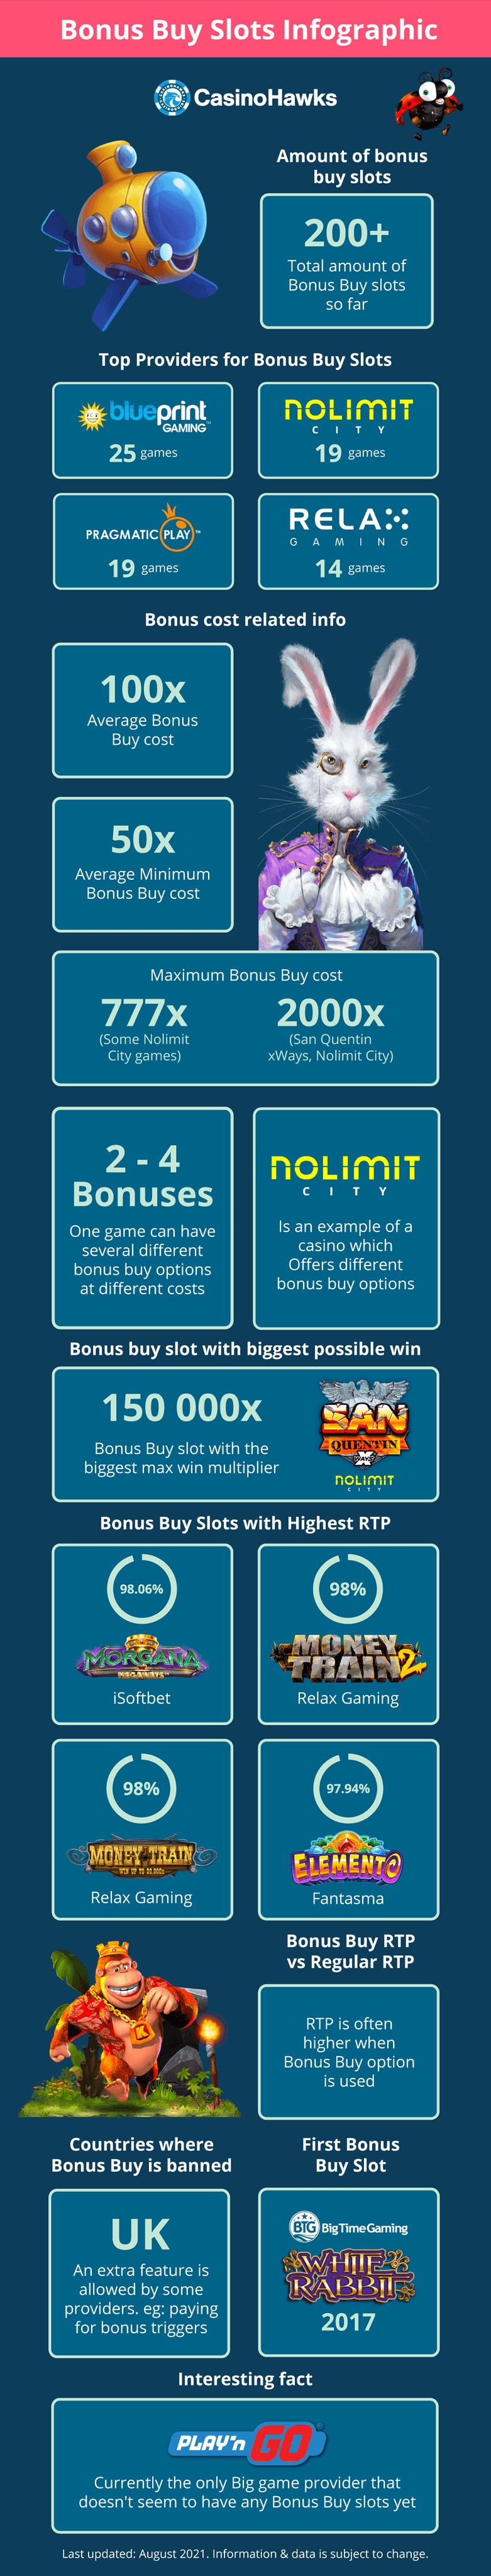 Bonus Buy infographic